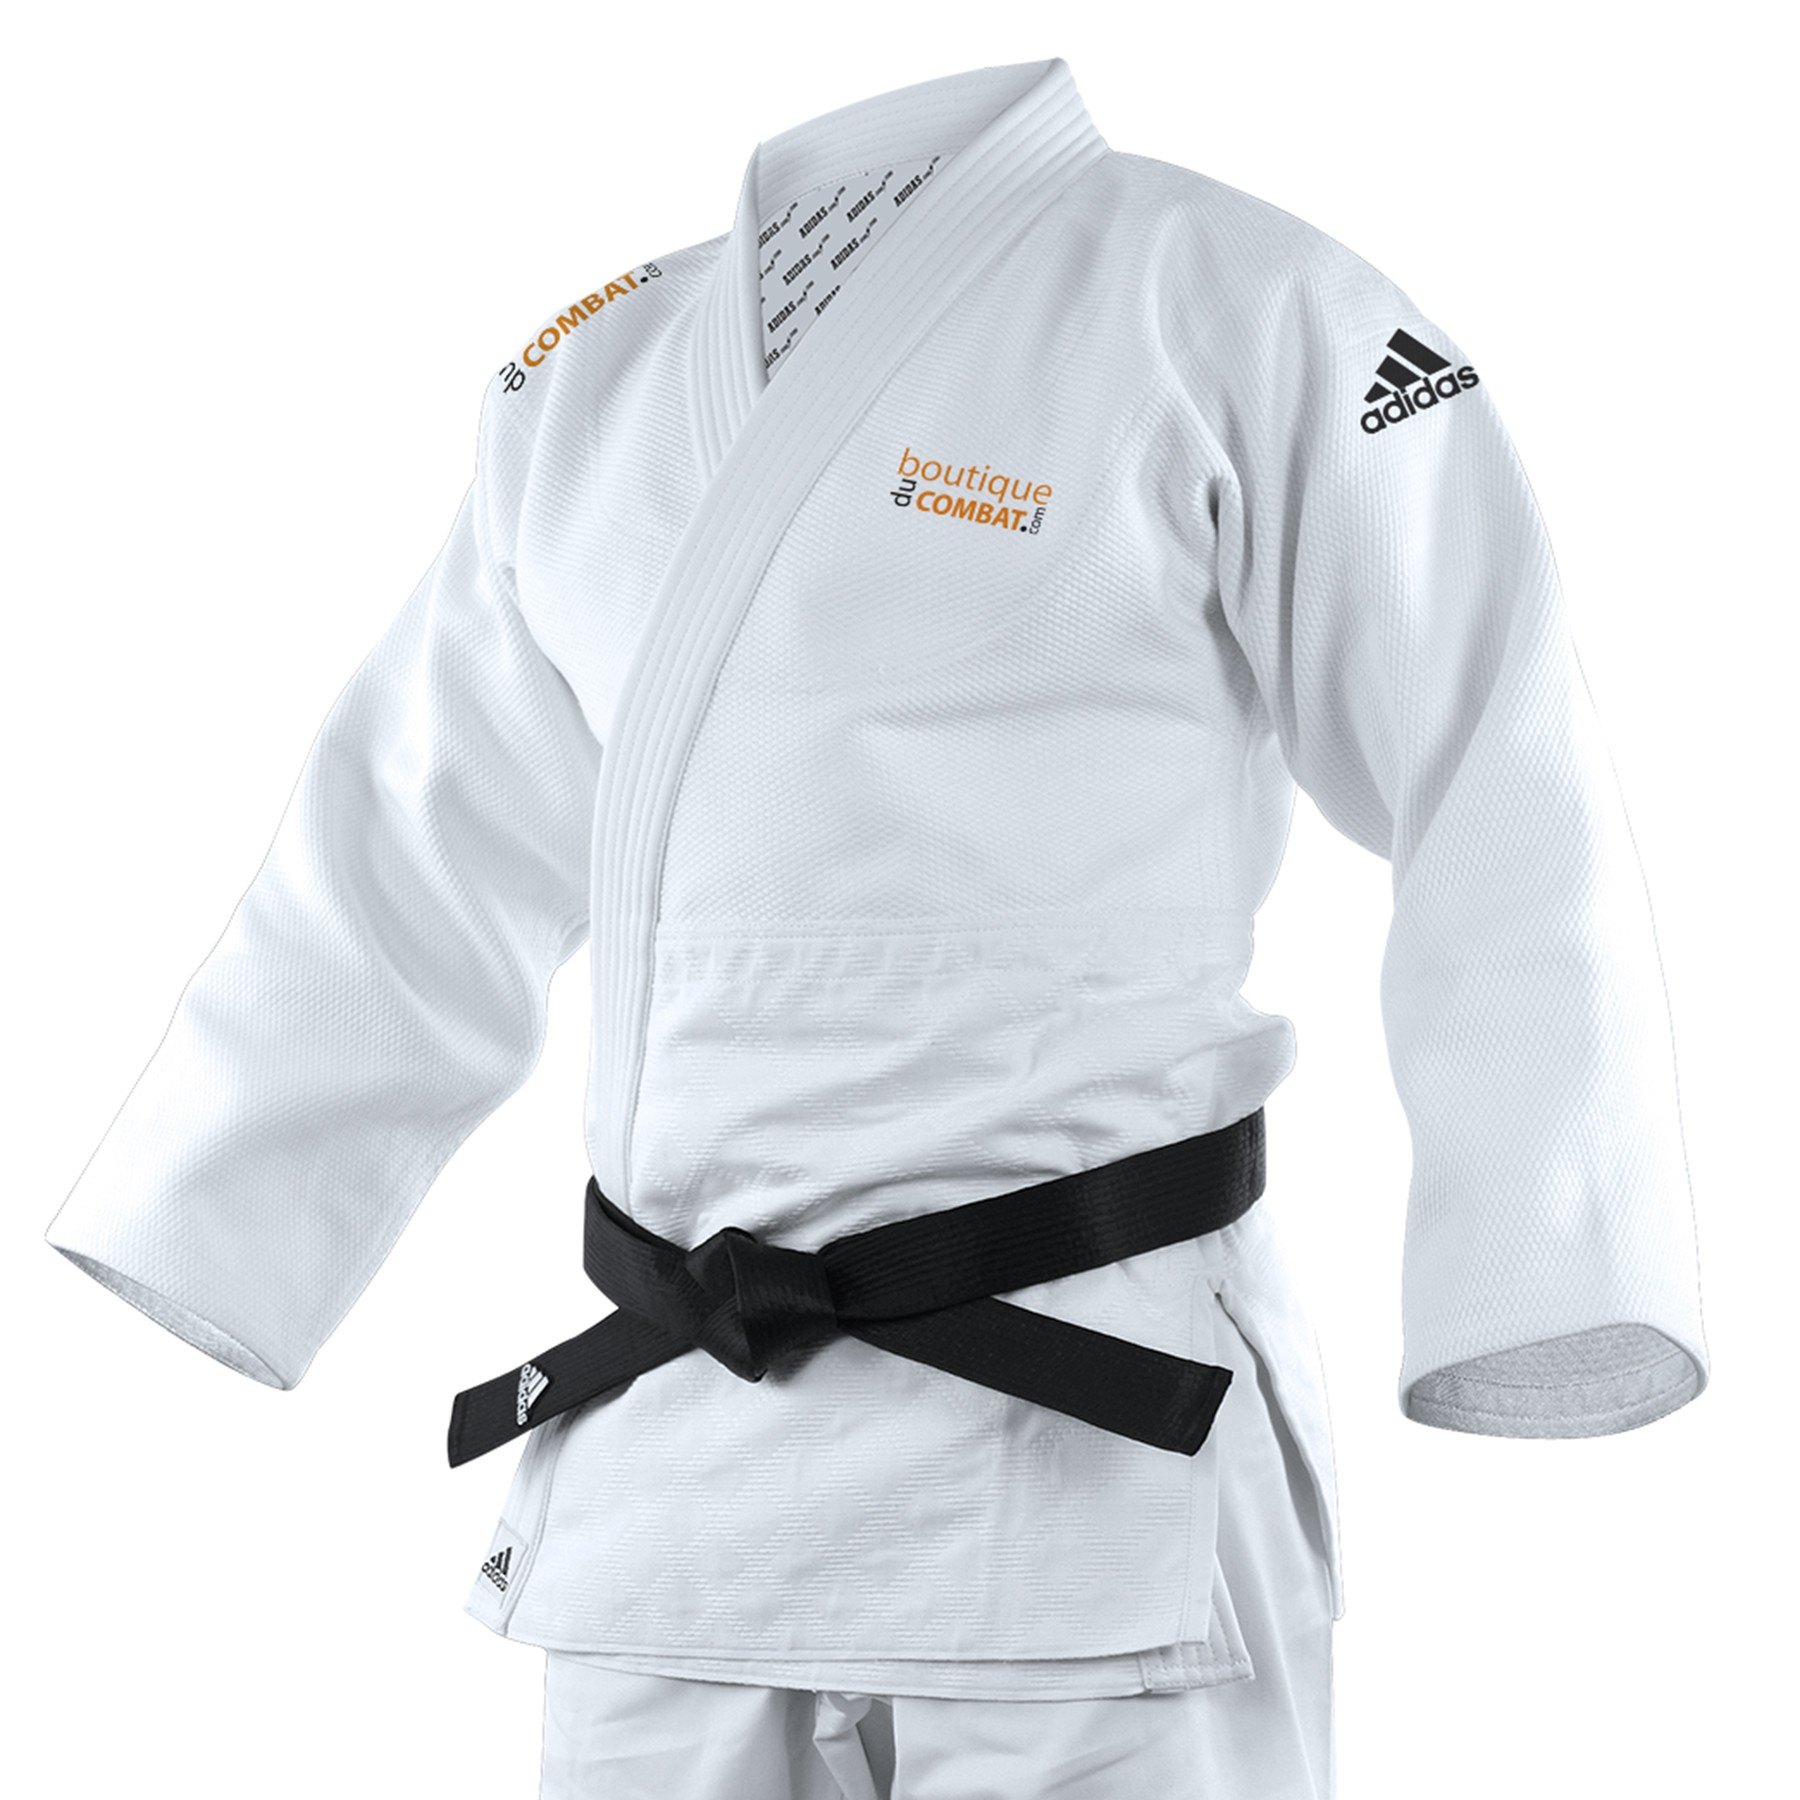 lago Sucio cliente Kimono de judo Millenium brodé J990EM adidas sur boutique-du-combat.com